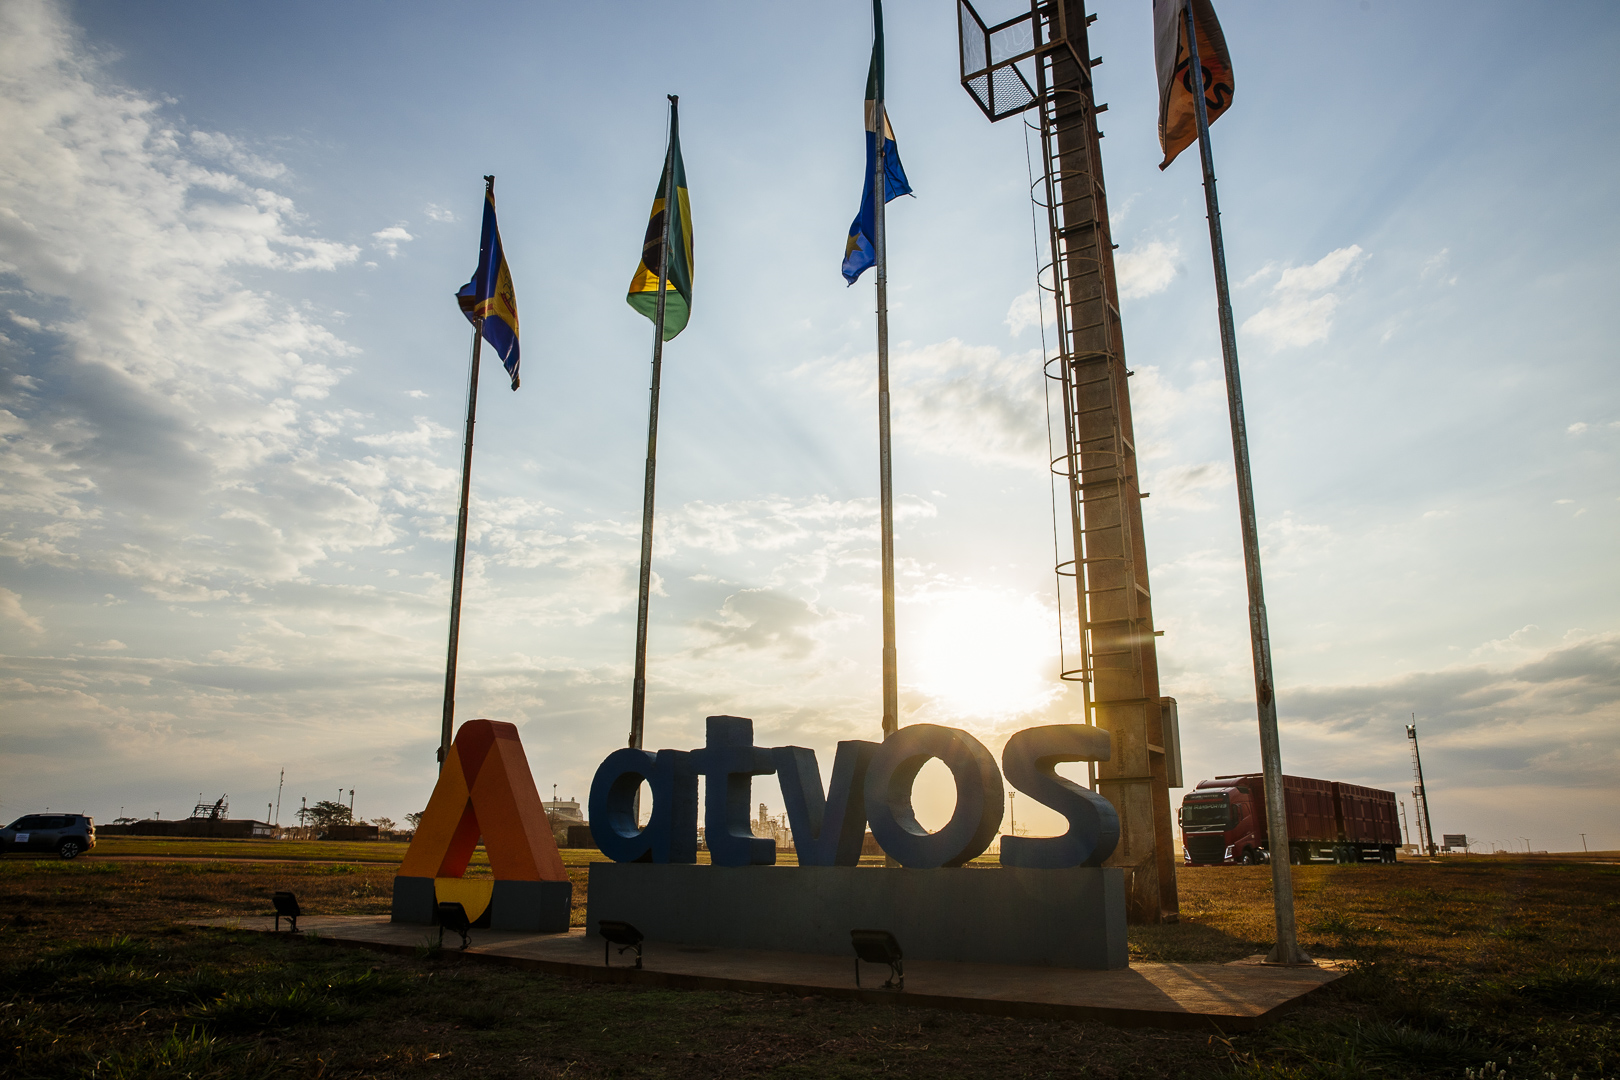 Atvos colabora com a Rede Brasil do Pacto Global da ONU